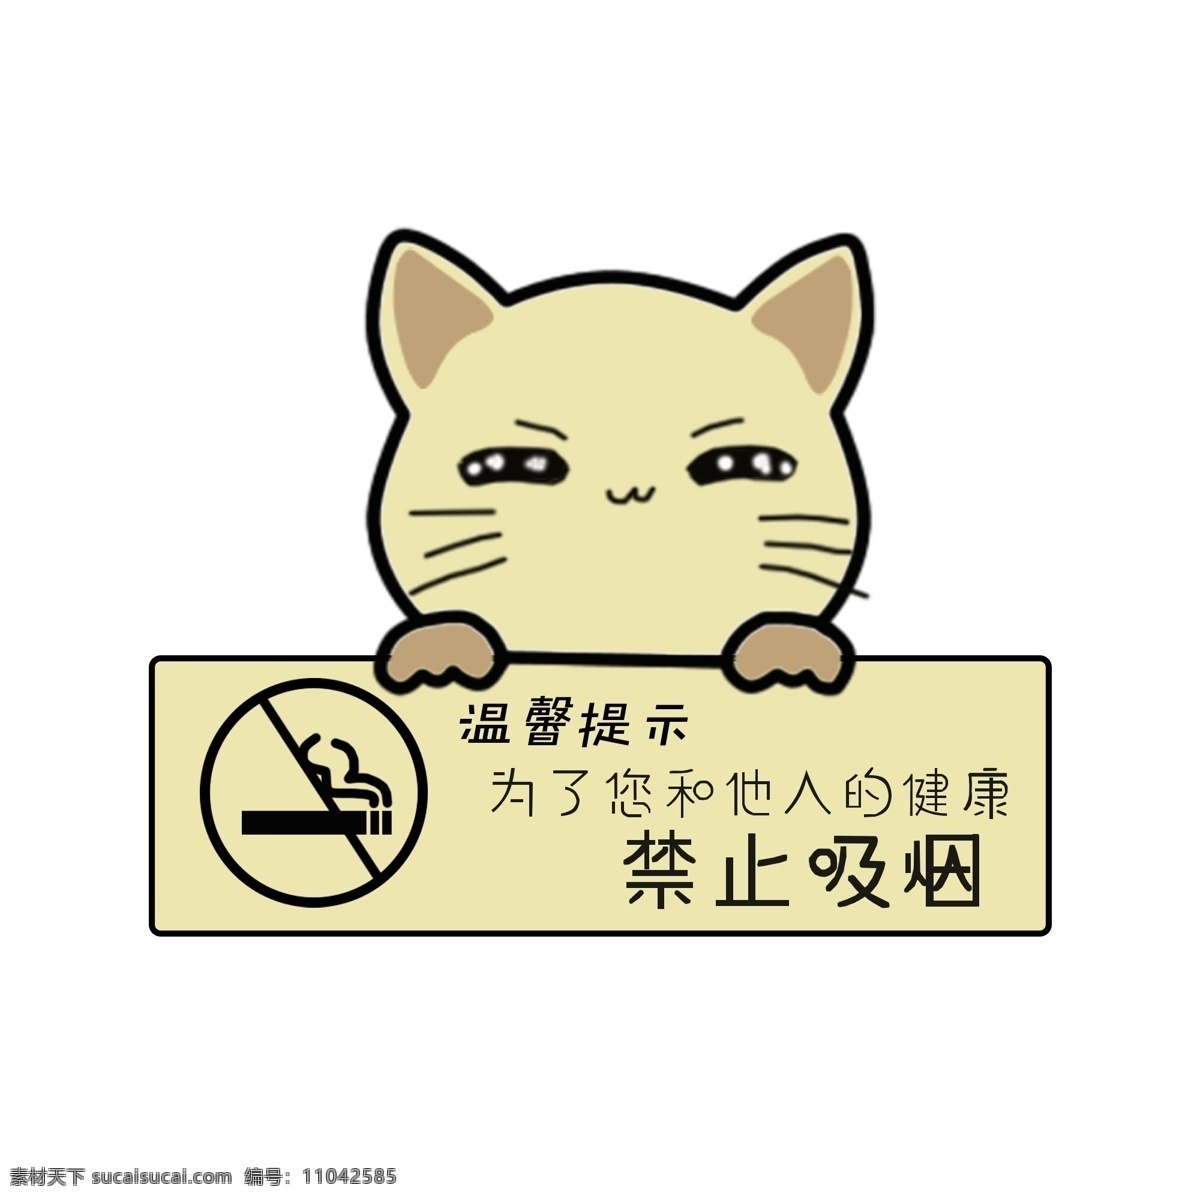 温馨 提示 语 请勿 吸烟 可爱 小猫 标牌 卡通 温馨提示语 请勿吸烟